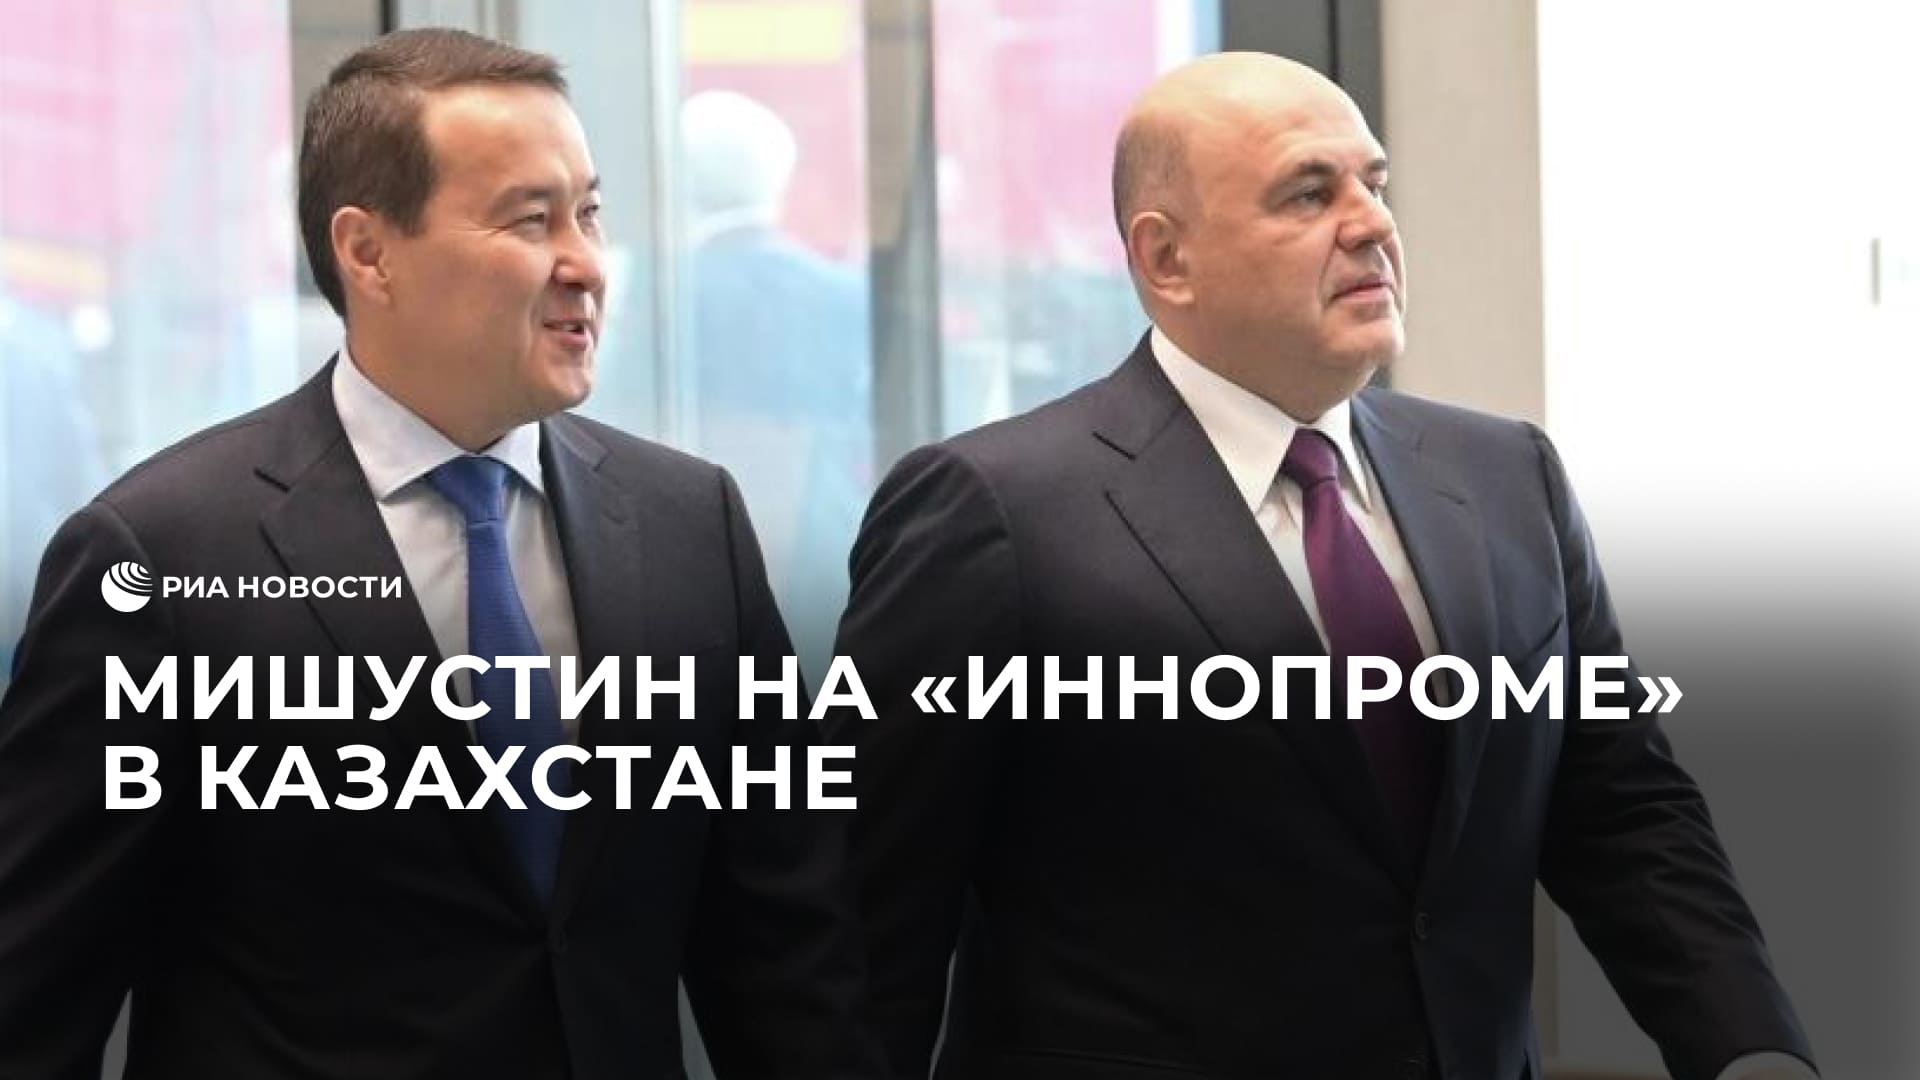 Мишустин на "Иннопроме" в Казахстане